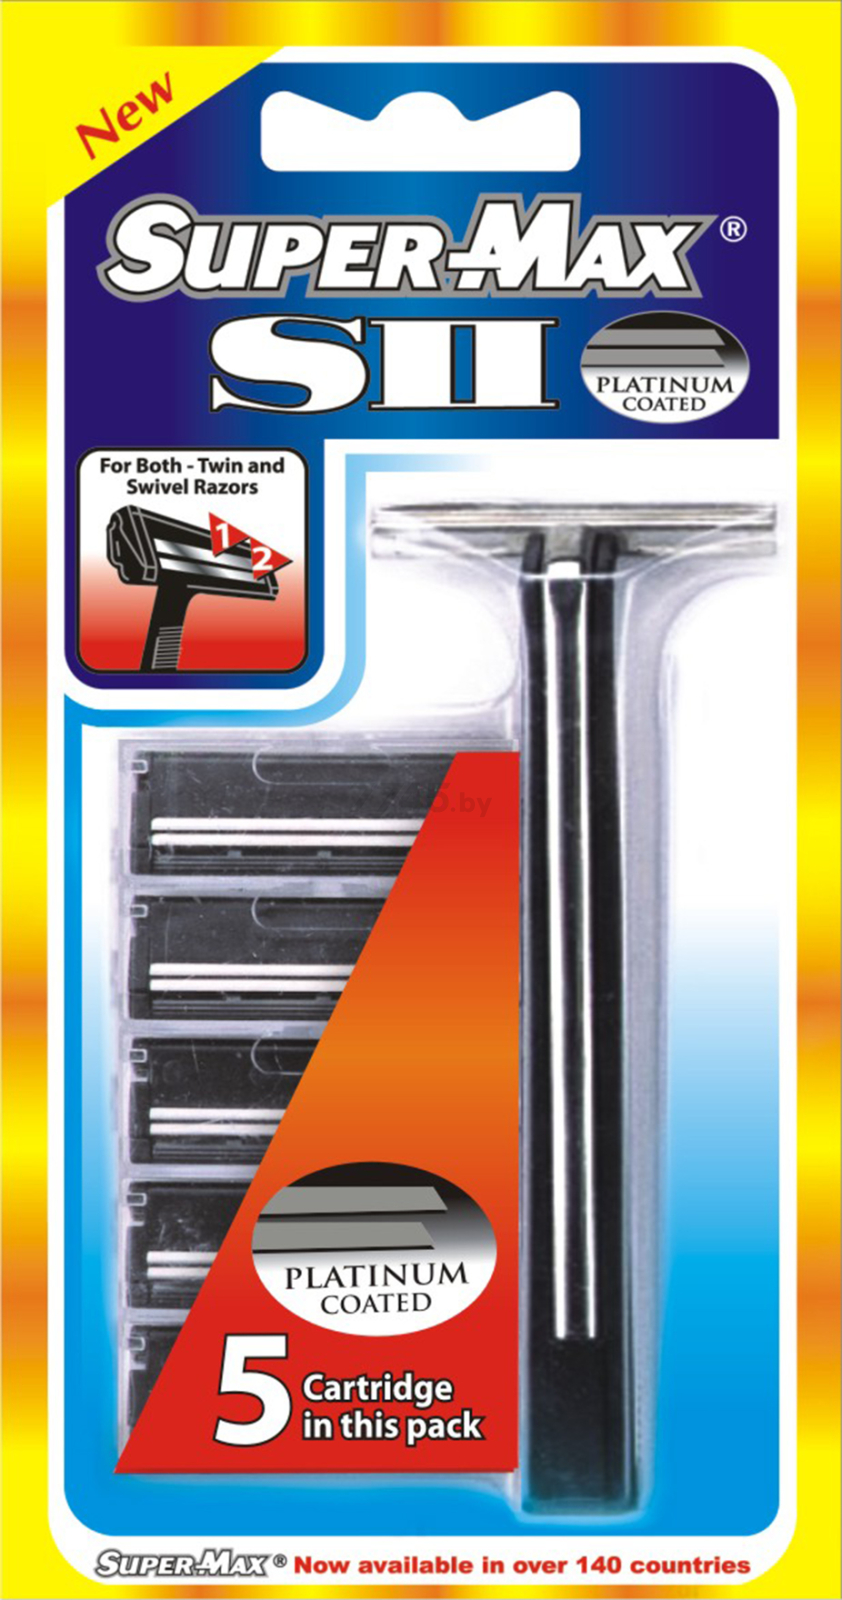 Бритва SUPER-MAX SII System и кассета 5 штук (AE08e)